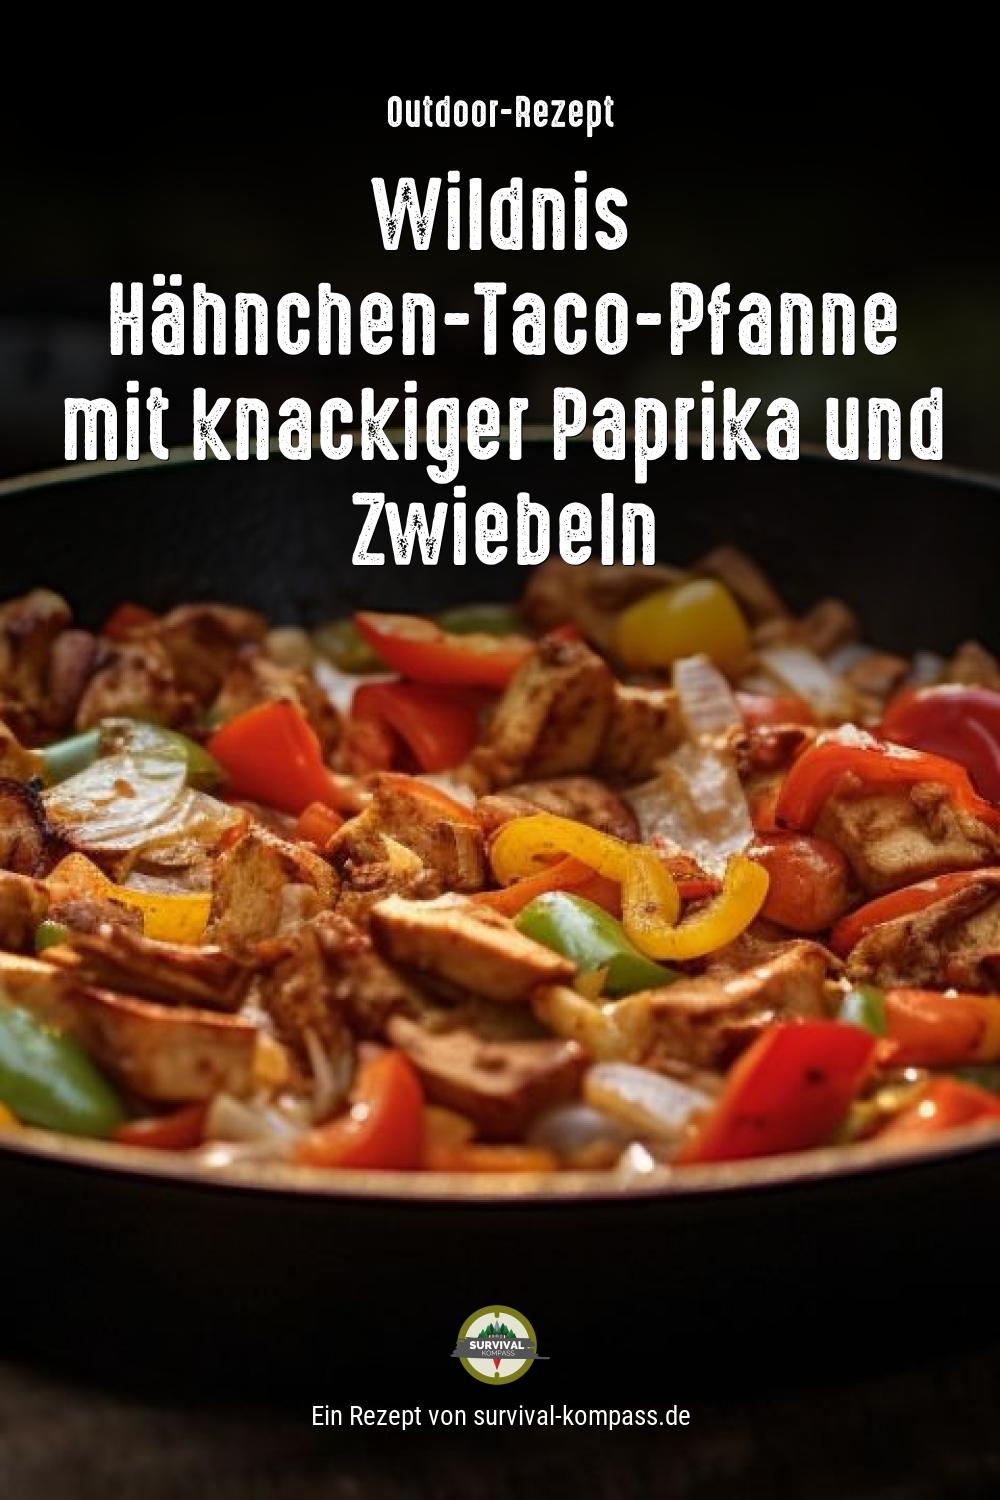 Wildnis Hähnchen-Taco-Pfanne mit knackiger Paprika und Zwiebeln